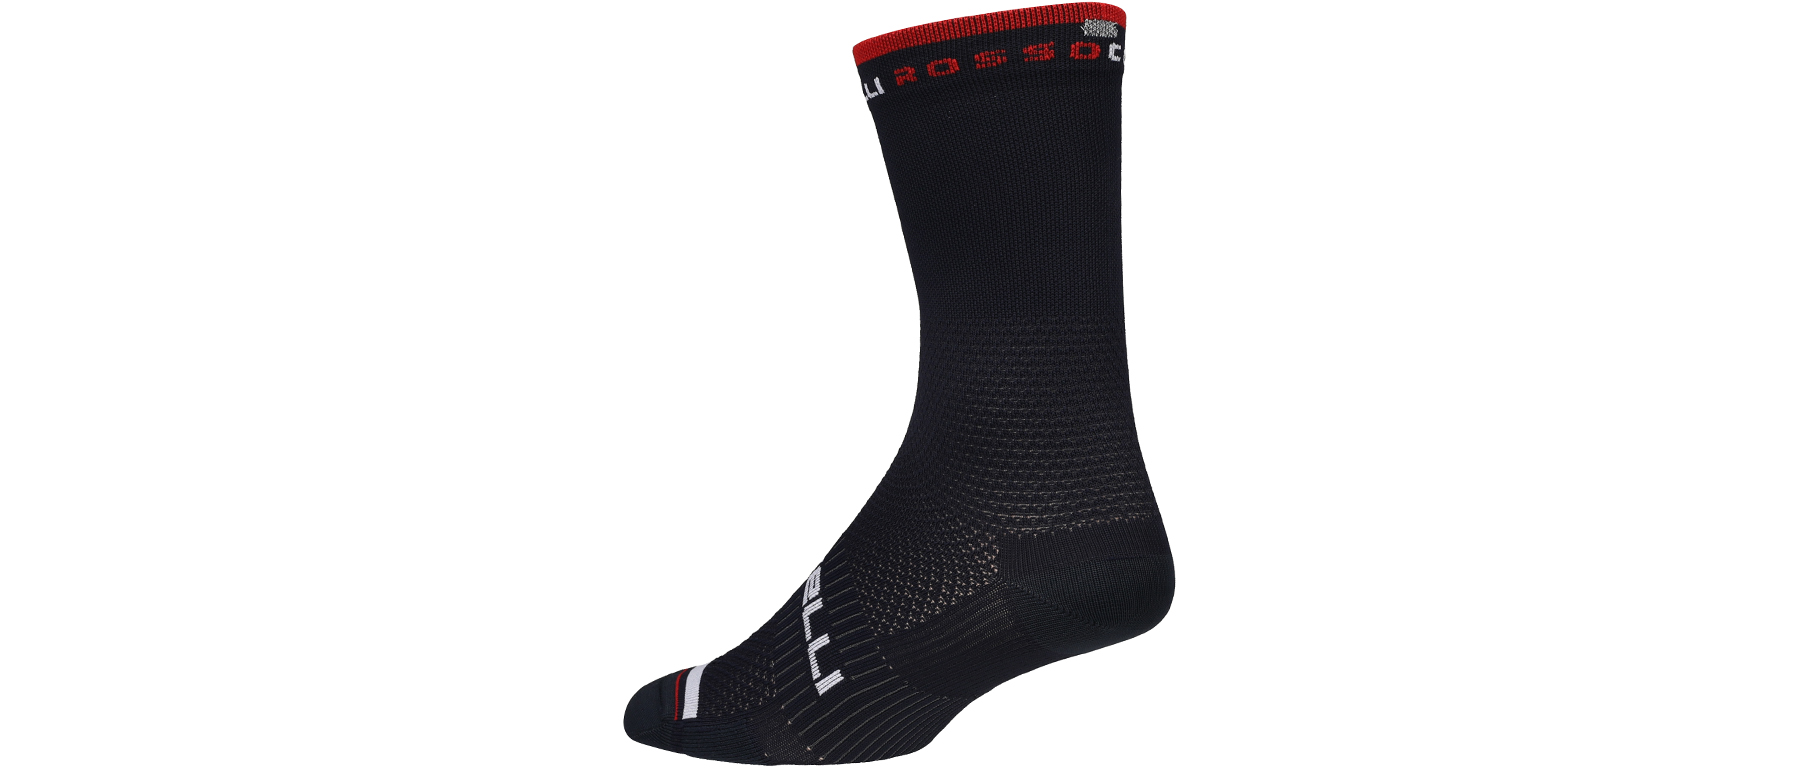 Castelli Rosso Corsa Pro 15 Sock